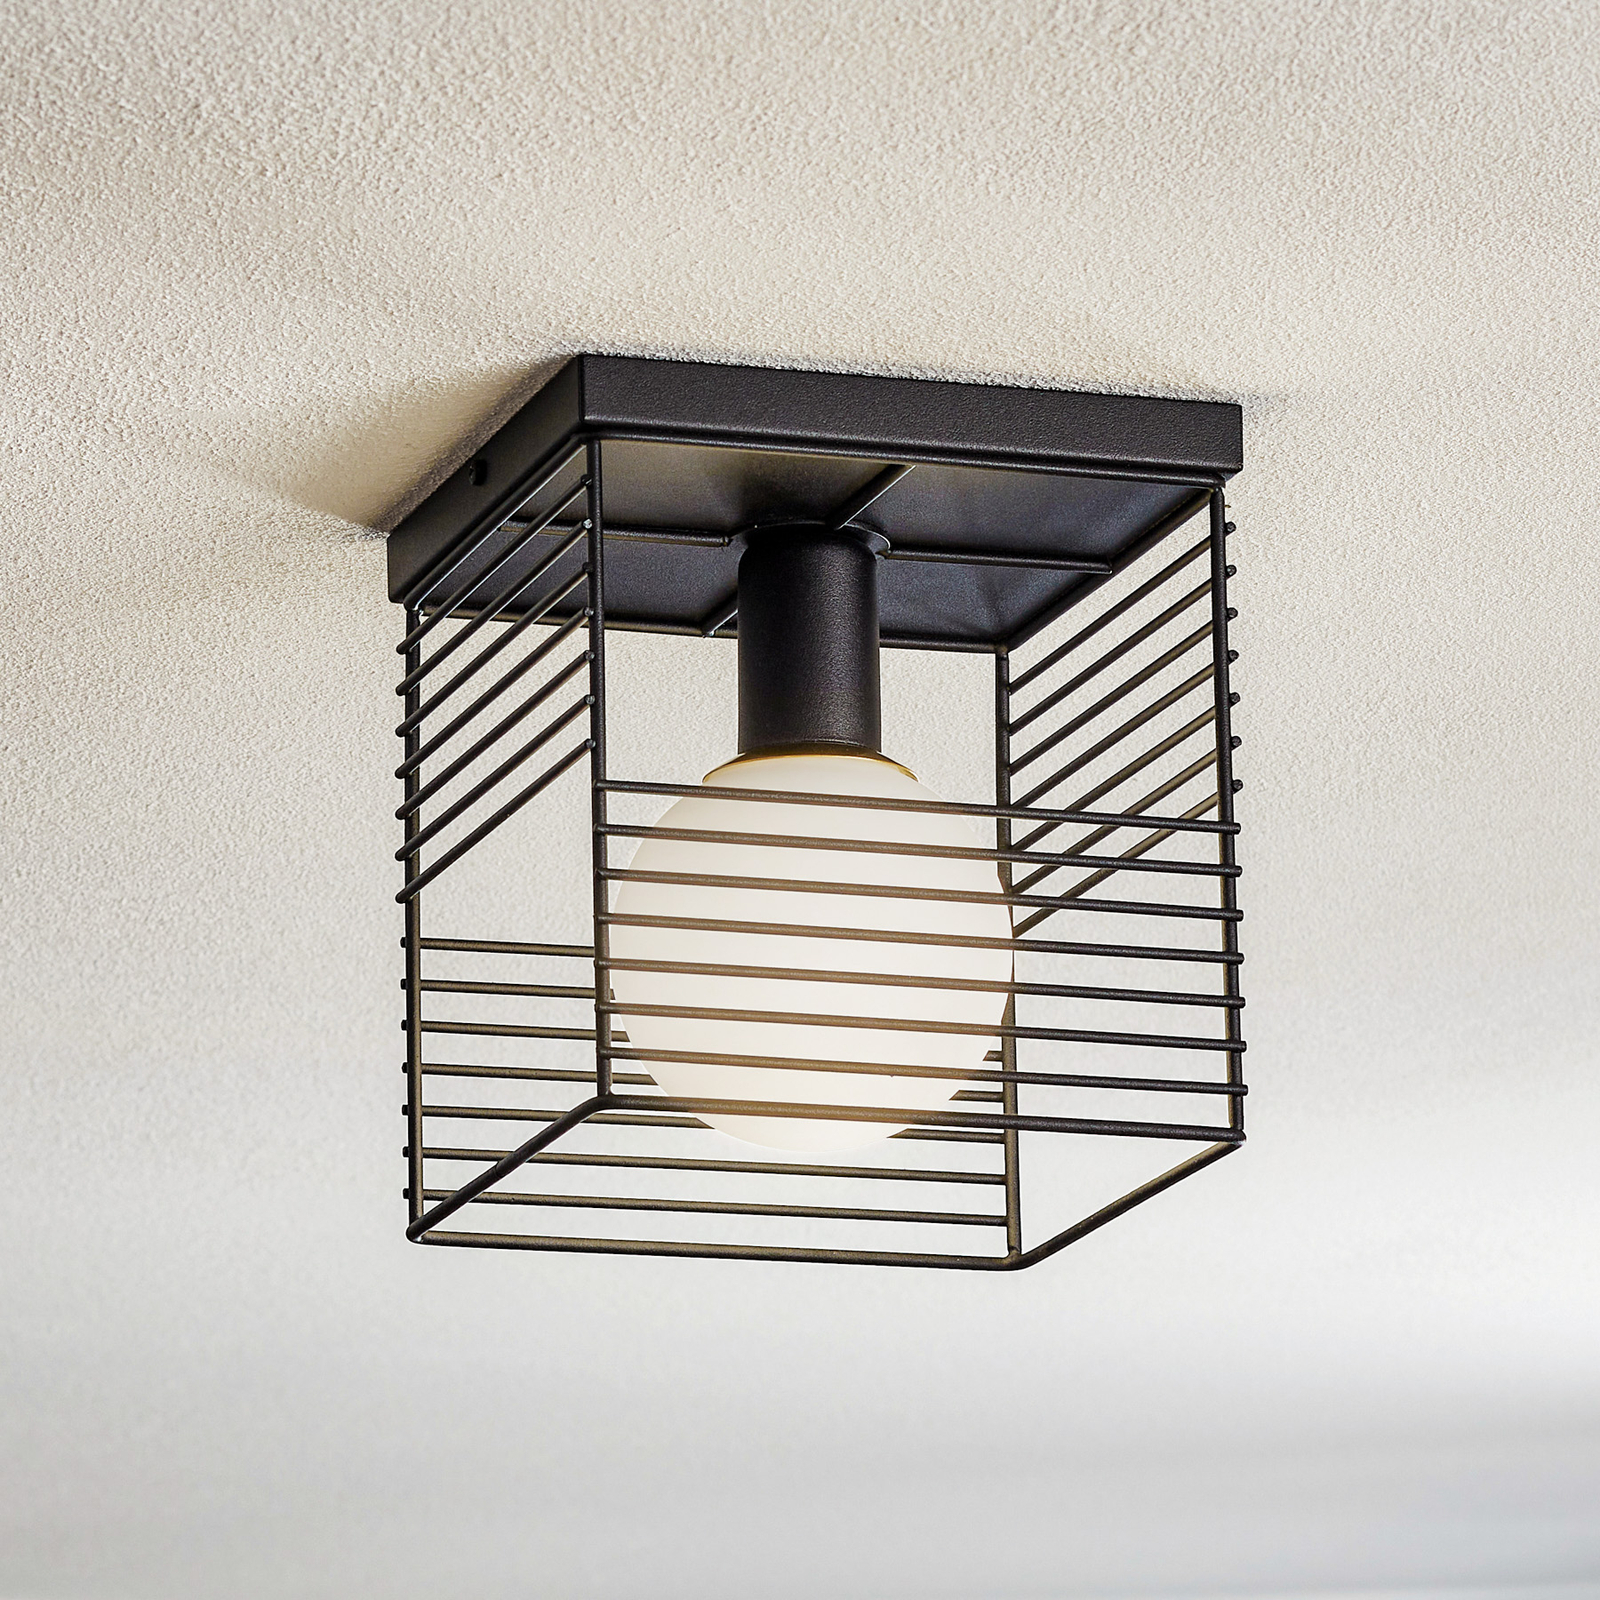 Skare ceiling light in a cage design, black